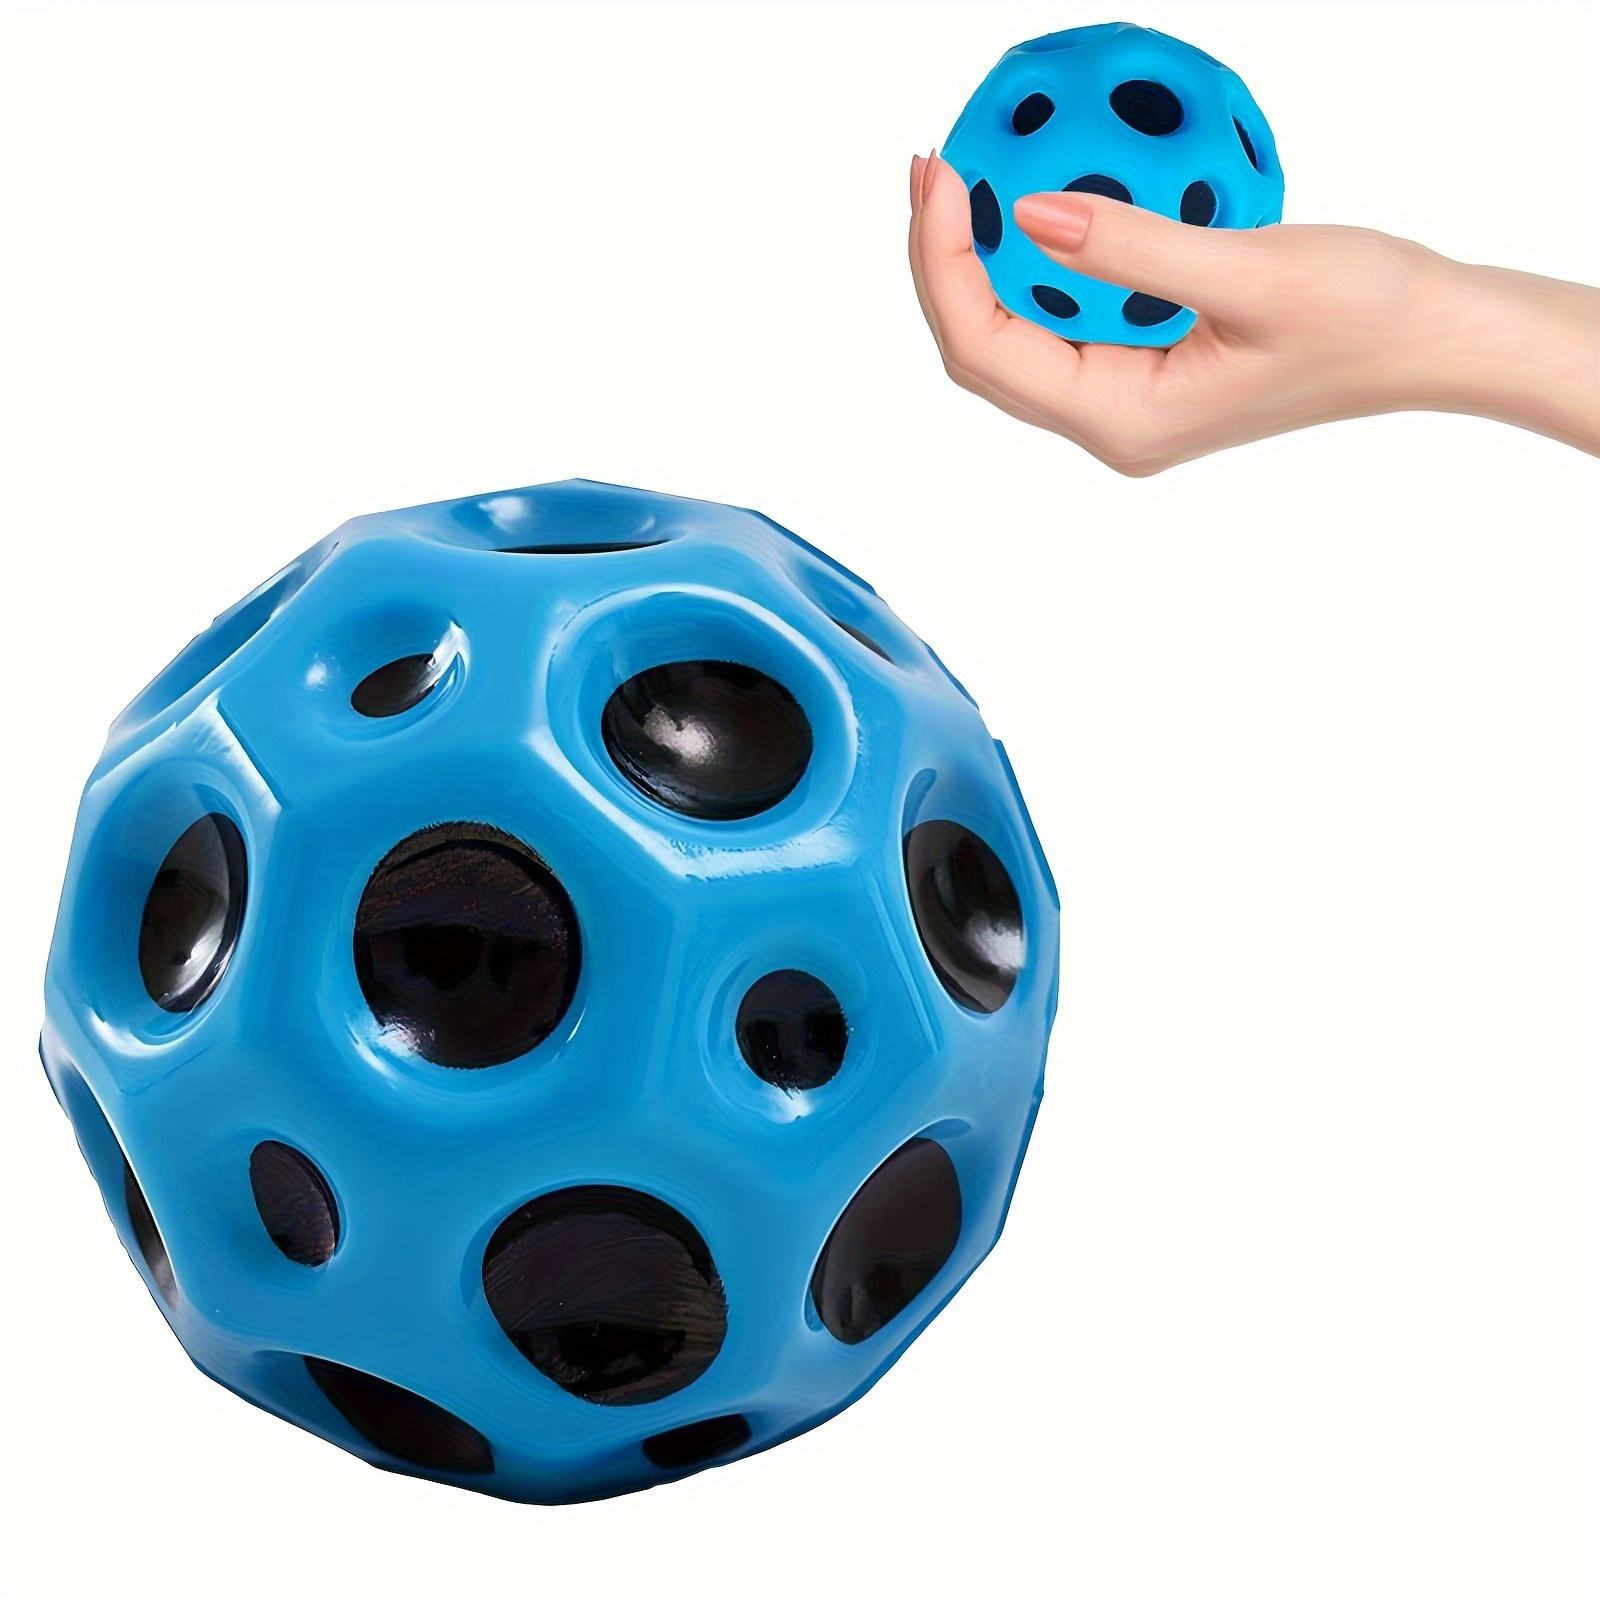 Bola Espacial de rebote extremadamente alto para Niños, juguetes